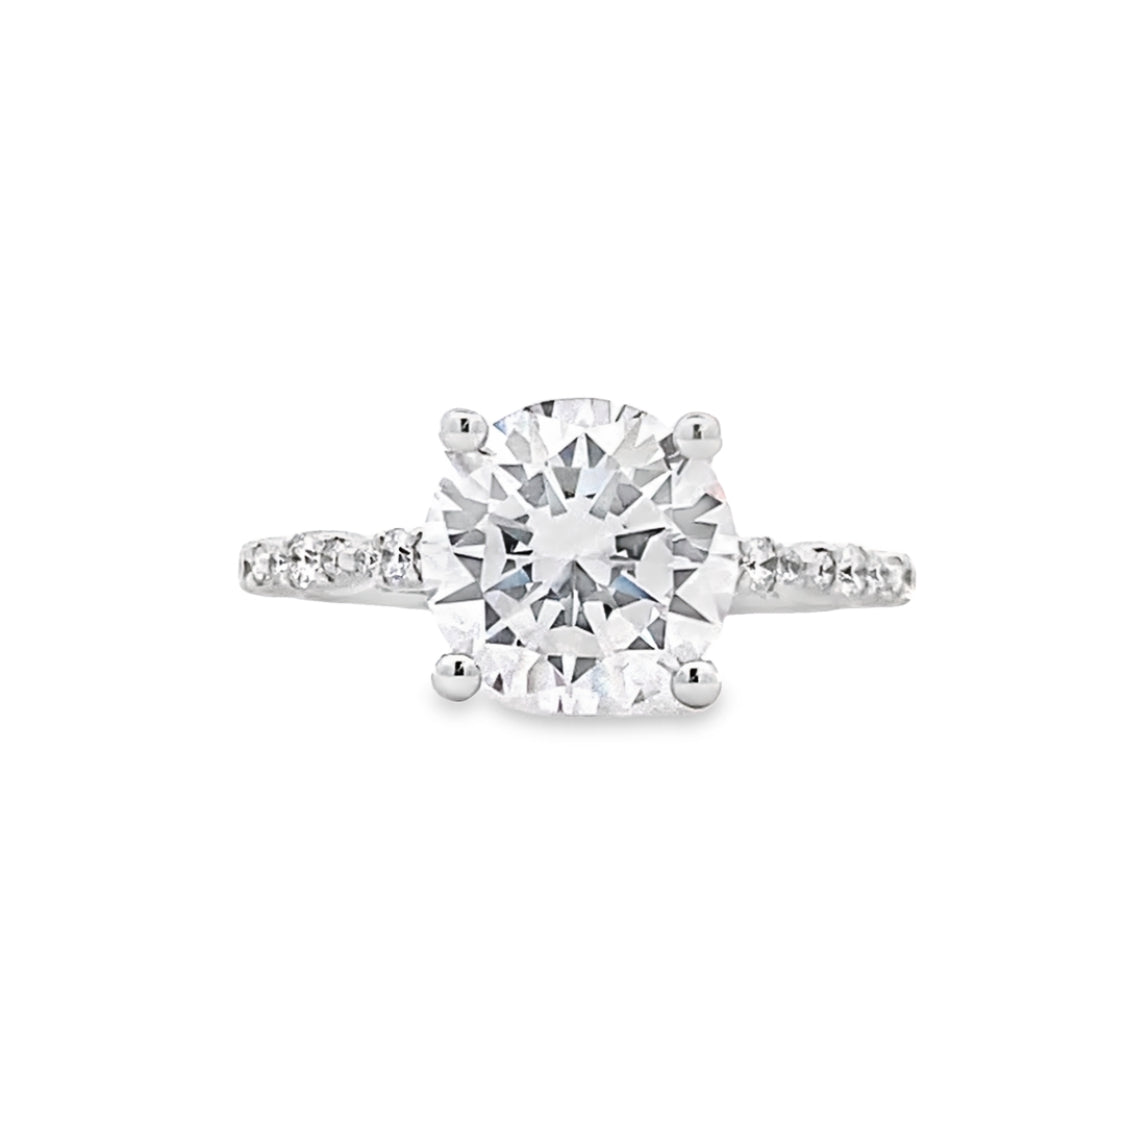 FANA 14 KT White Gold Side Stones Diamond Engagement Ring S4199/WG